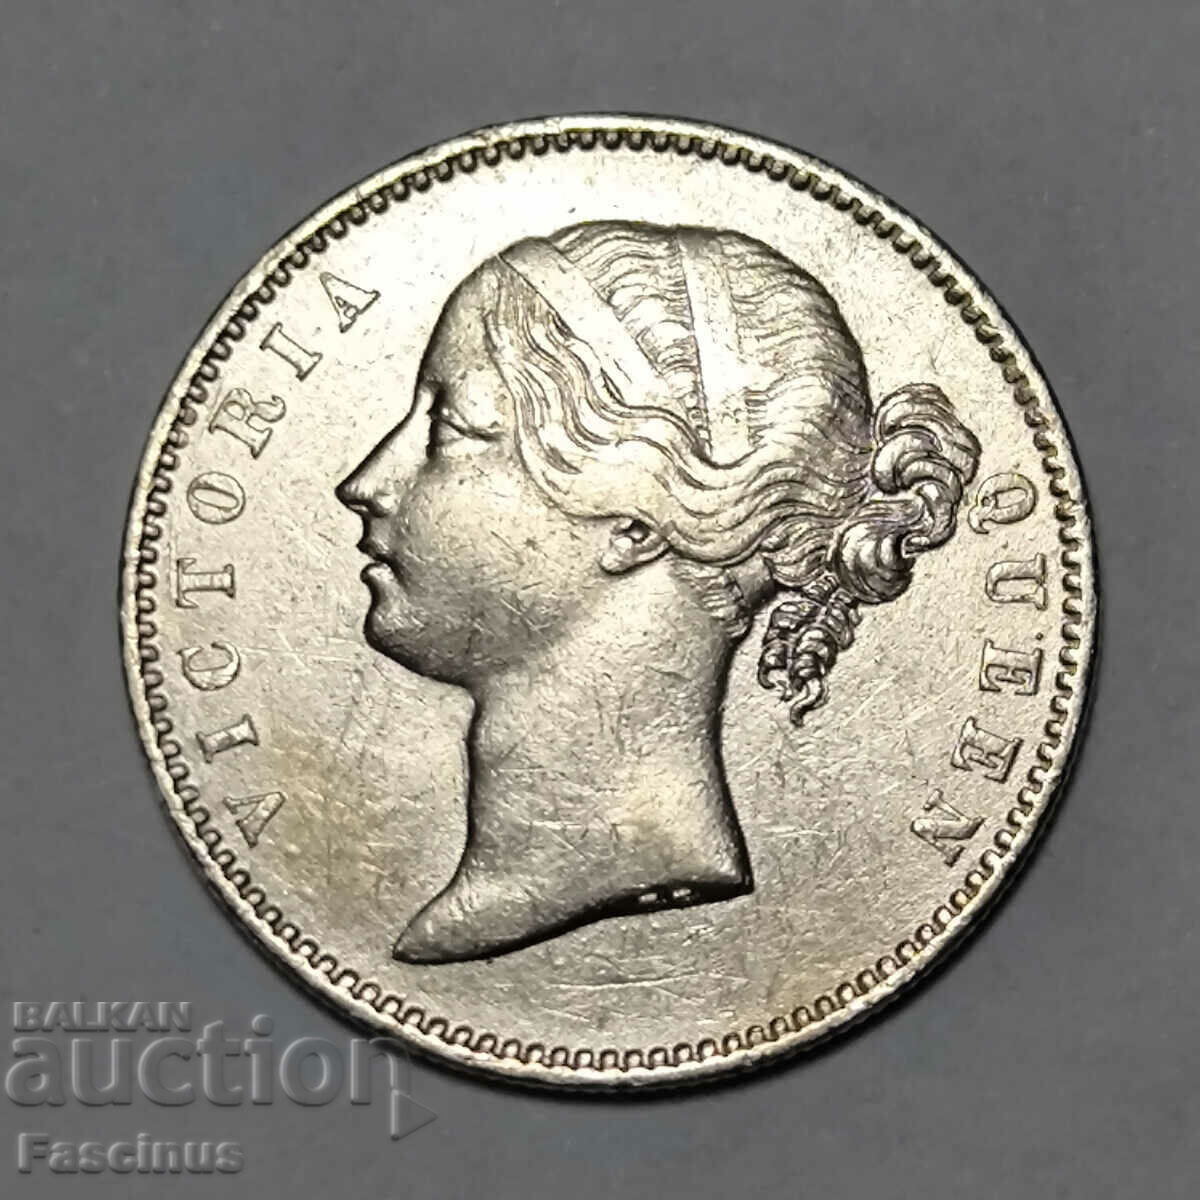 Ασημένιο νόμισμα 1 ρουπίας 1840 Βρετανική Ινδία